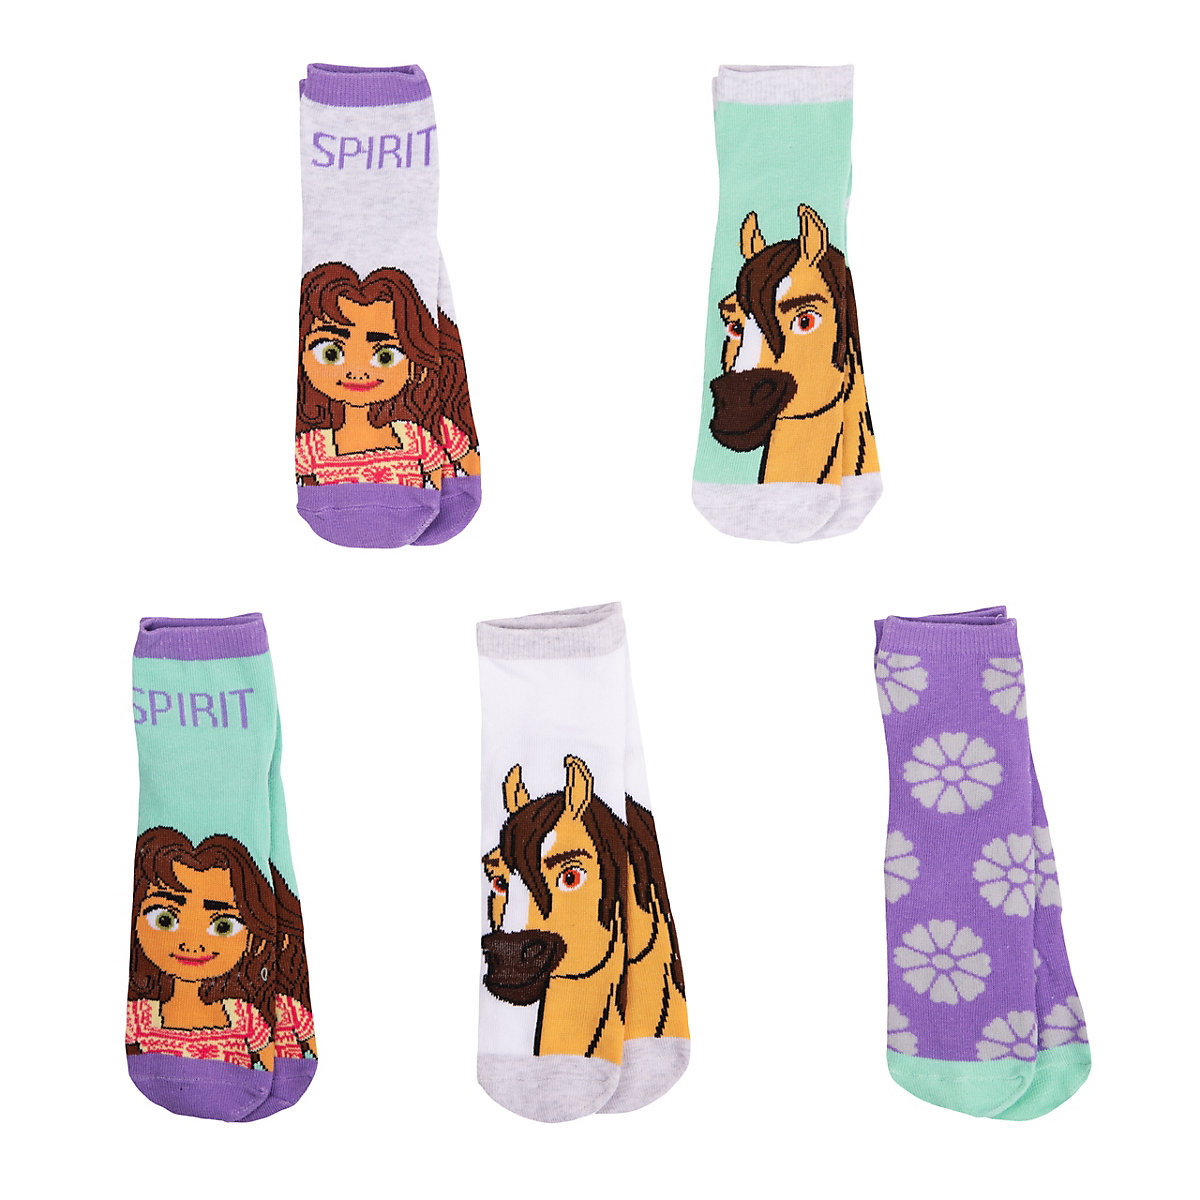 Spirit Socken für Mädchen